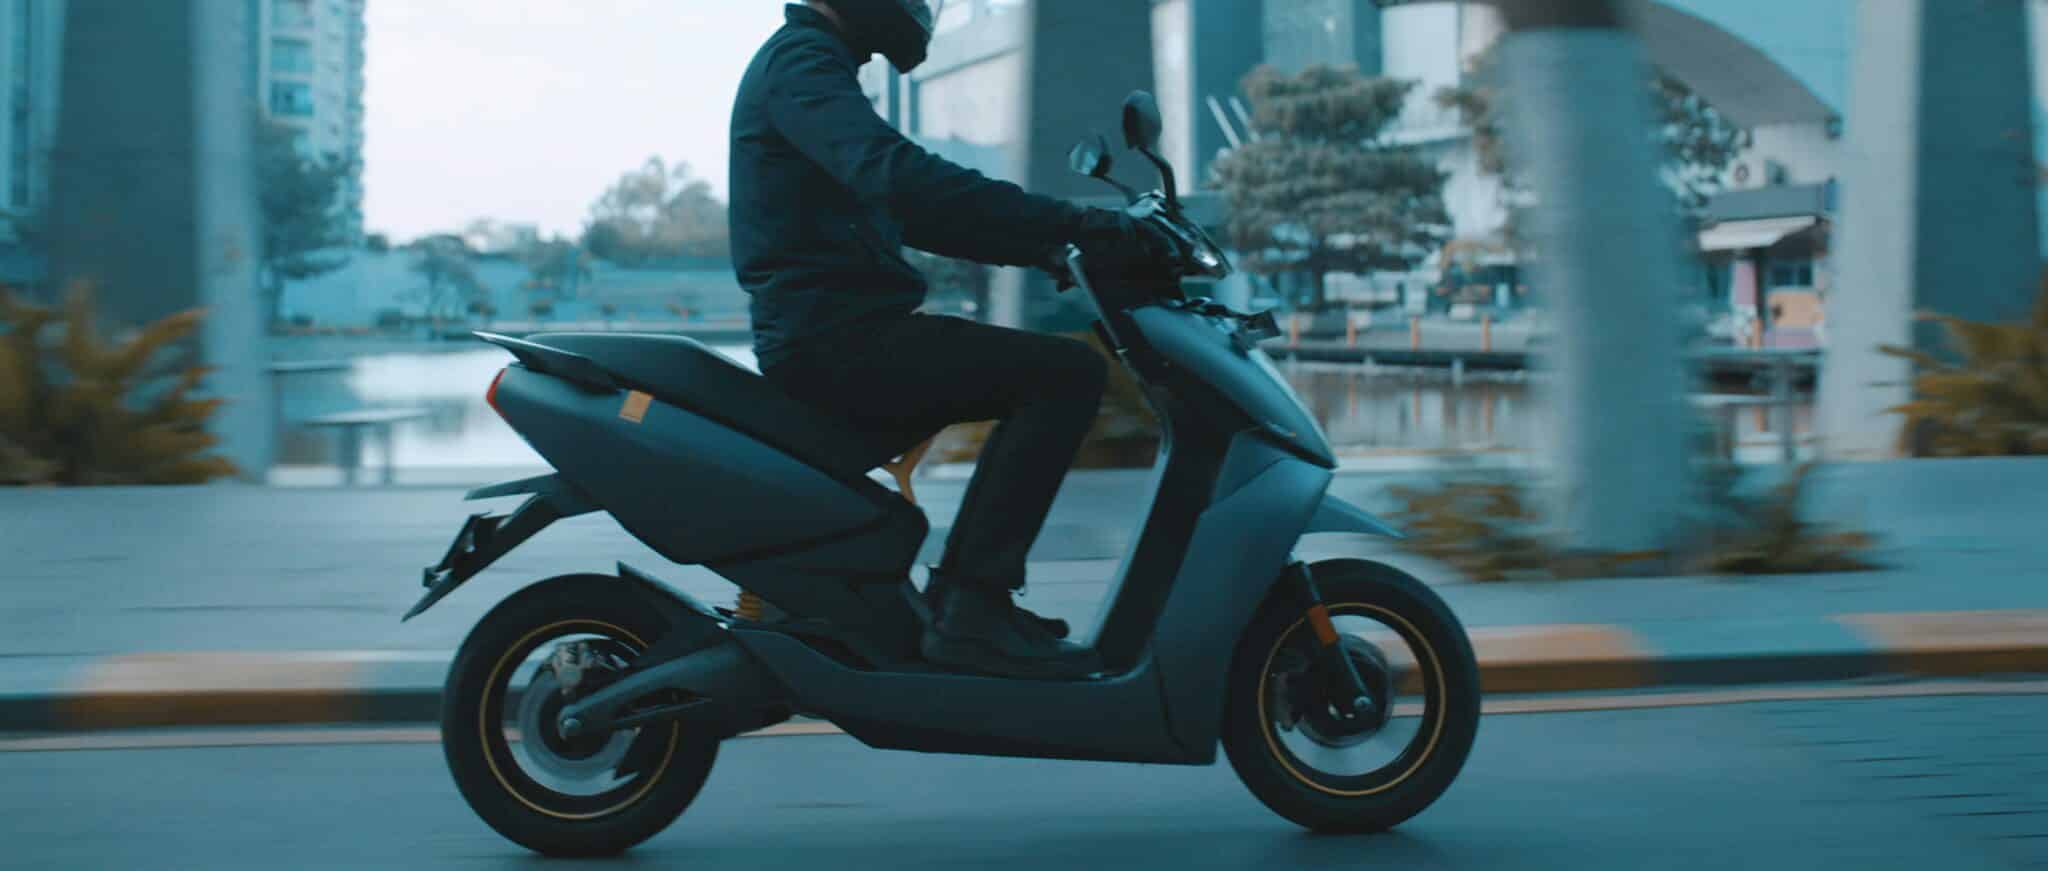 découvrez une large sélection de scooters de qualité. trouvez le scooter idéal pour vos déplacements urbains ou vos escapades en ville.